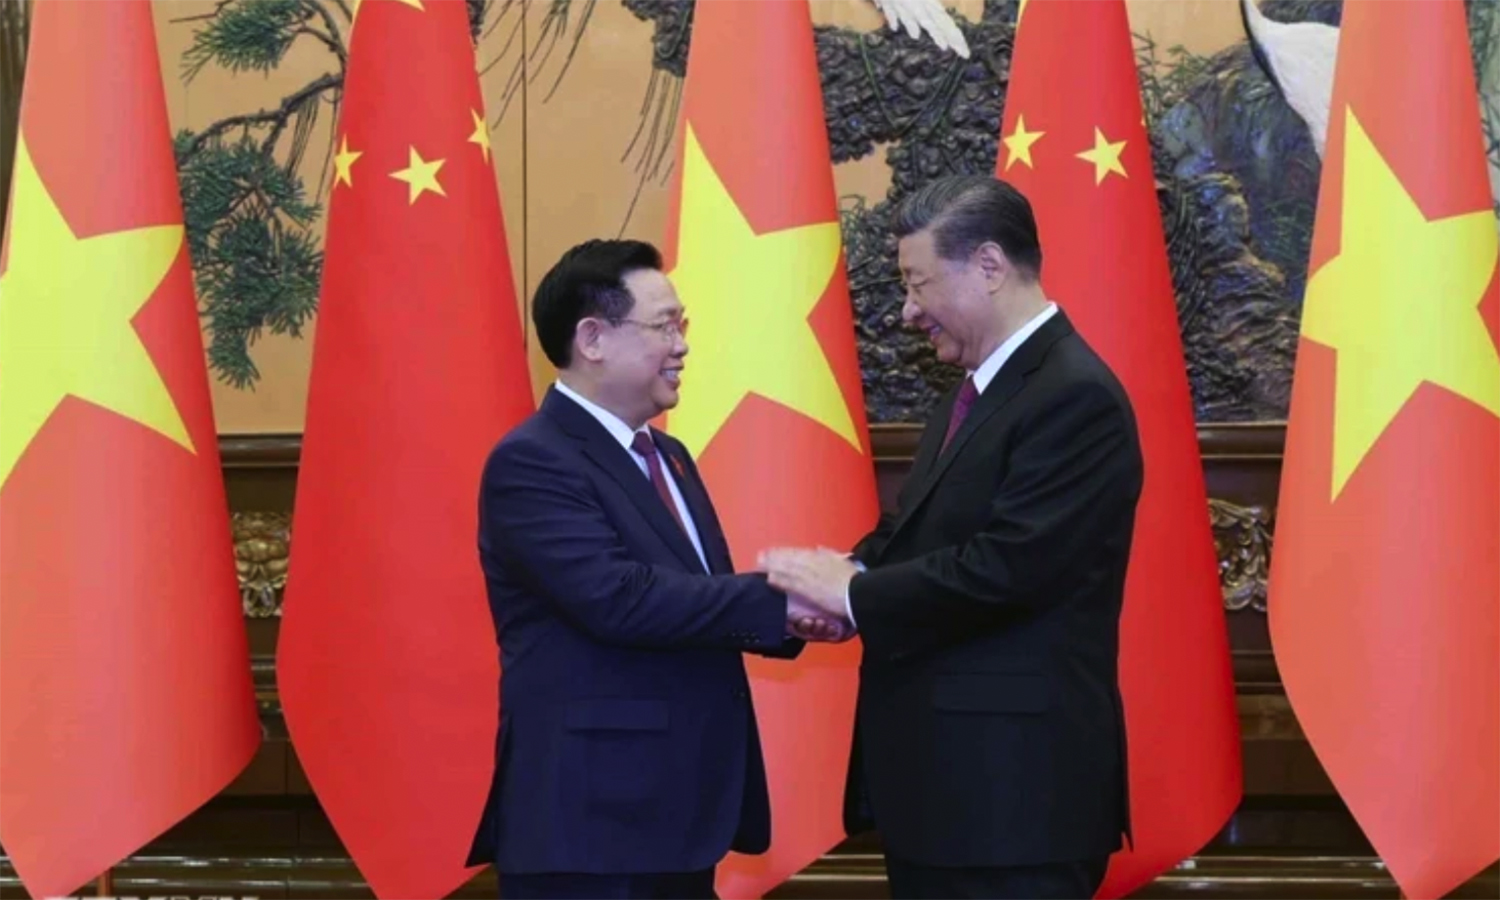 Chủ tịch Quốc hội Vương Đình Huệ hội kiến Tổng Bí thư, Chủ tịch nước Trung Quốc Tập Cận Bình tại Đại lễ đường Nhân dân, Thủ đô Bắc Kinh, Trung Quốc. Ảnh: TTXVN